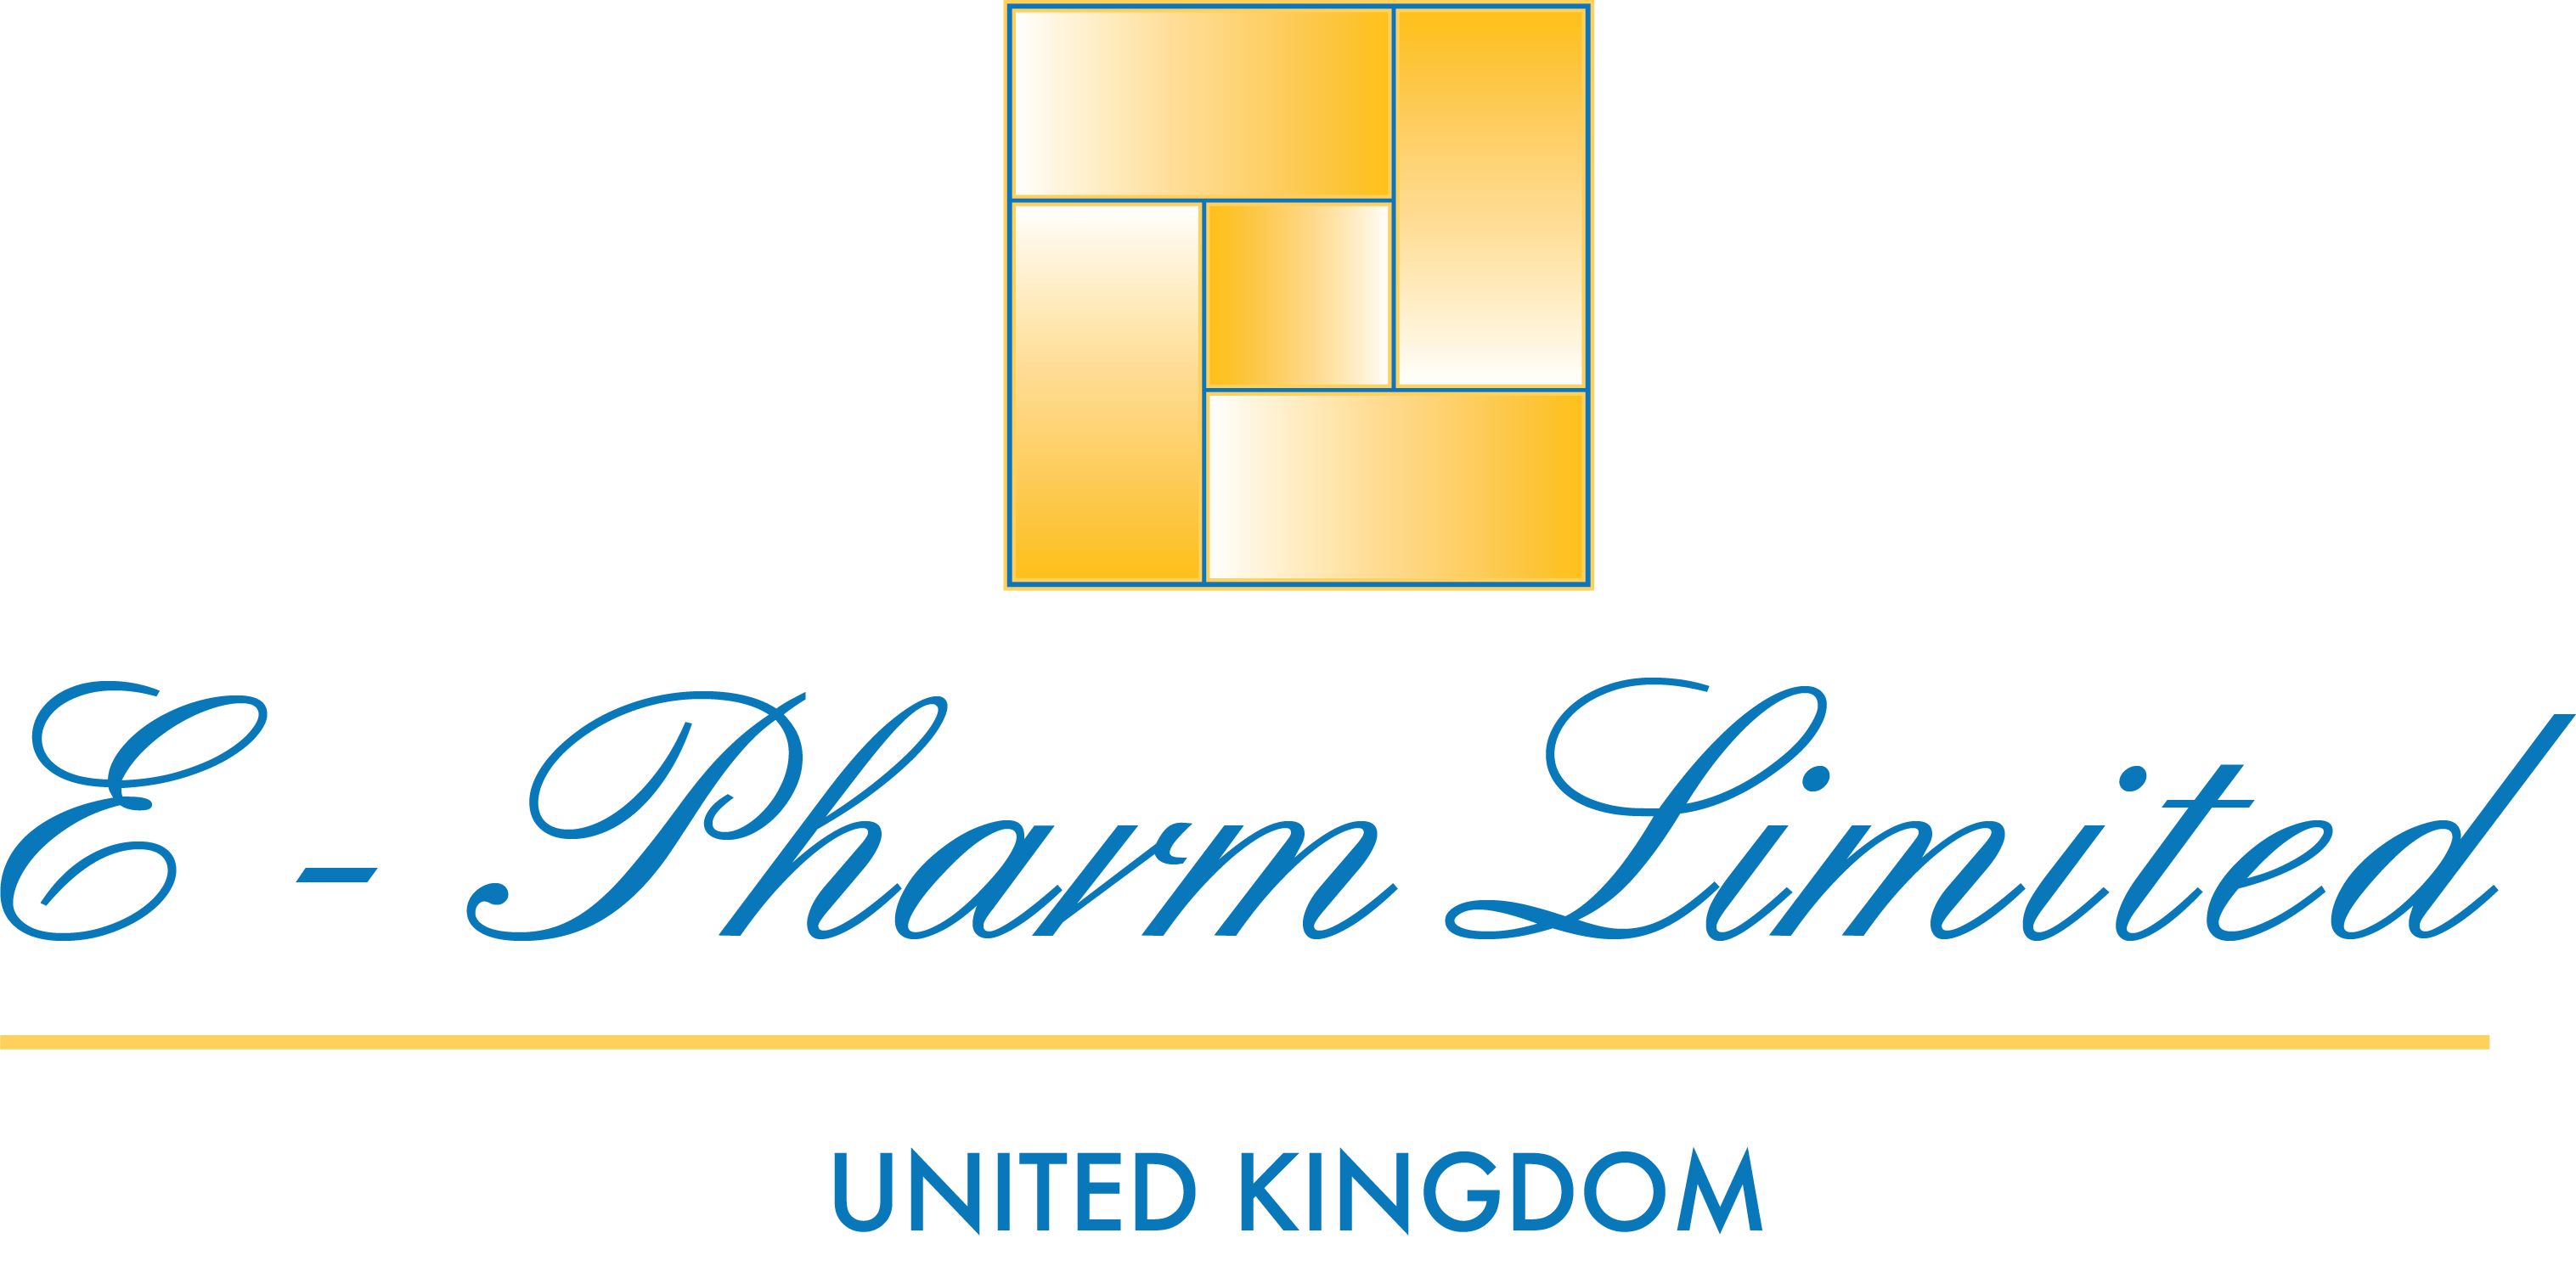 E-PHARM Limited